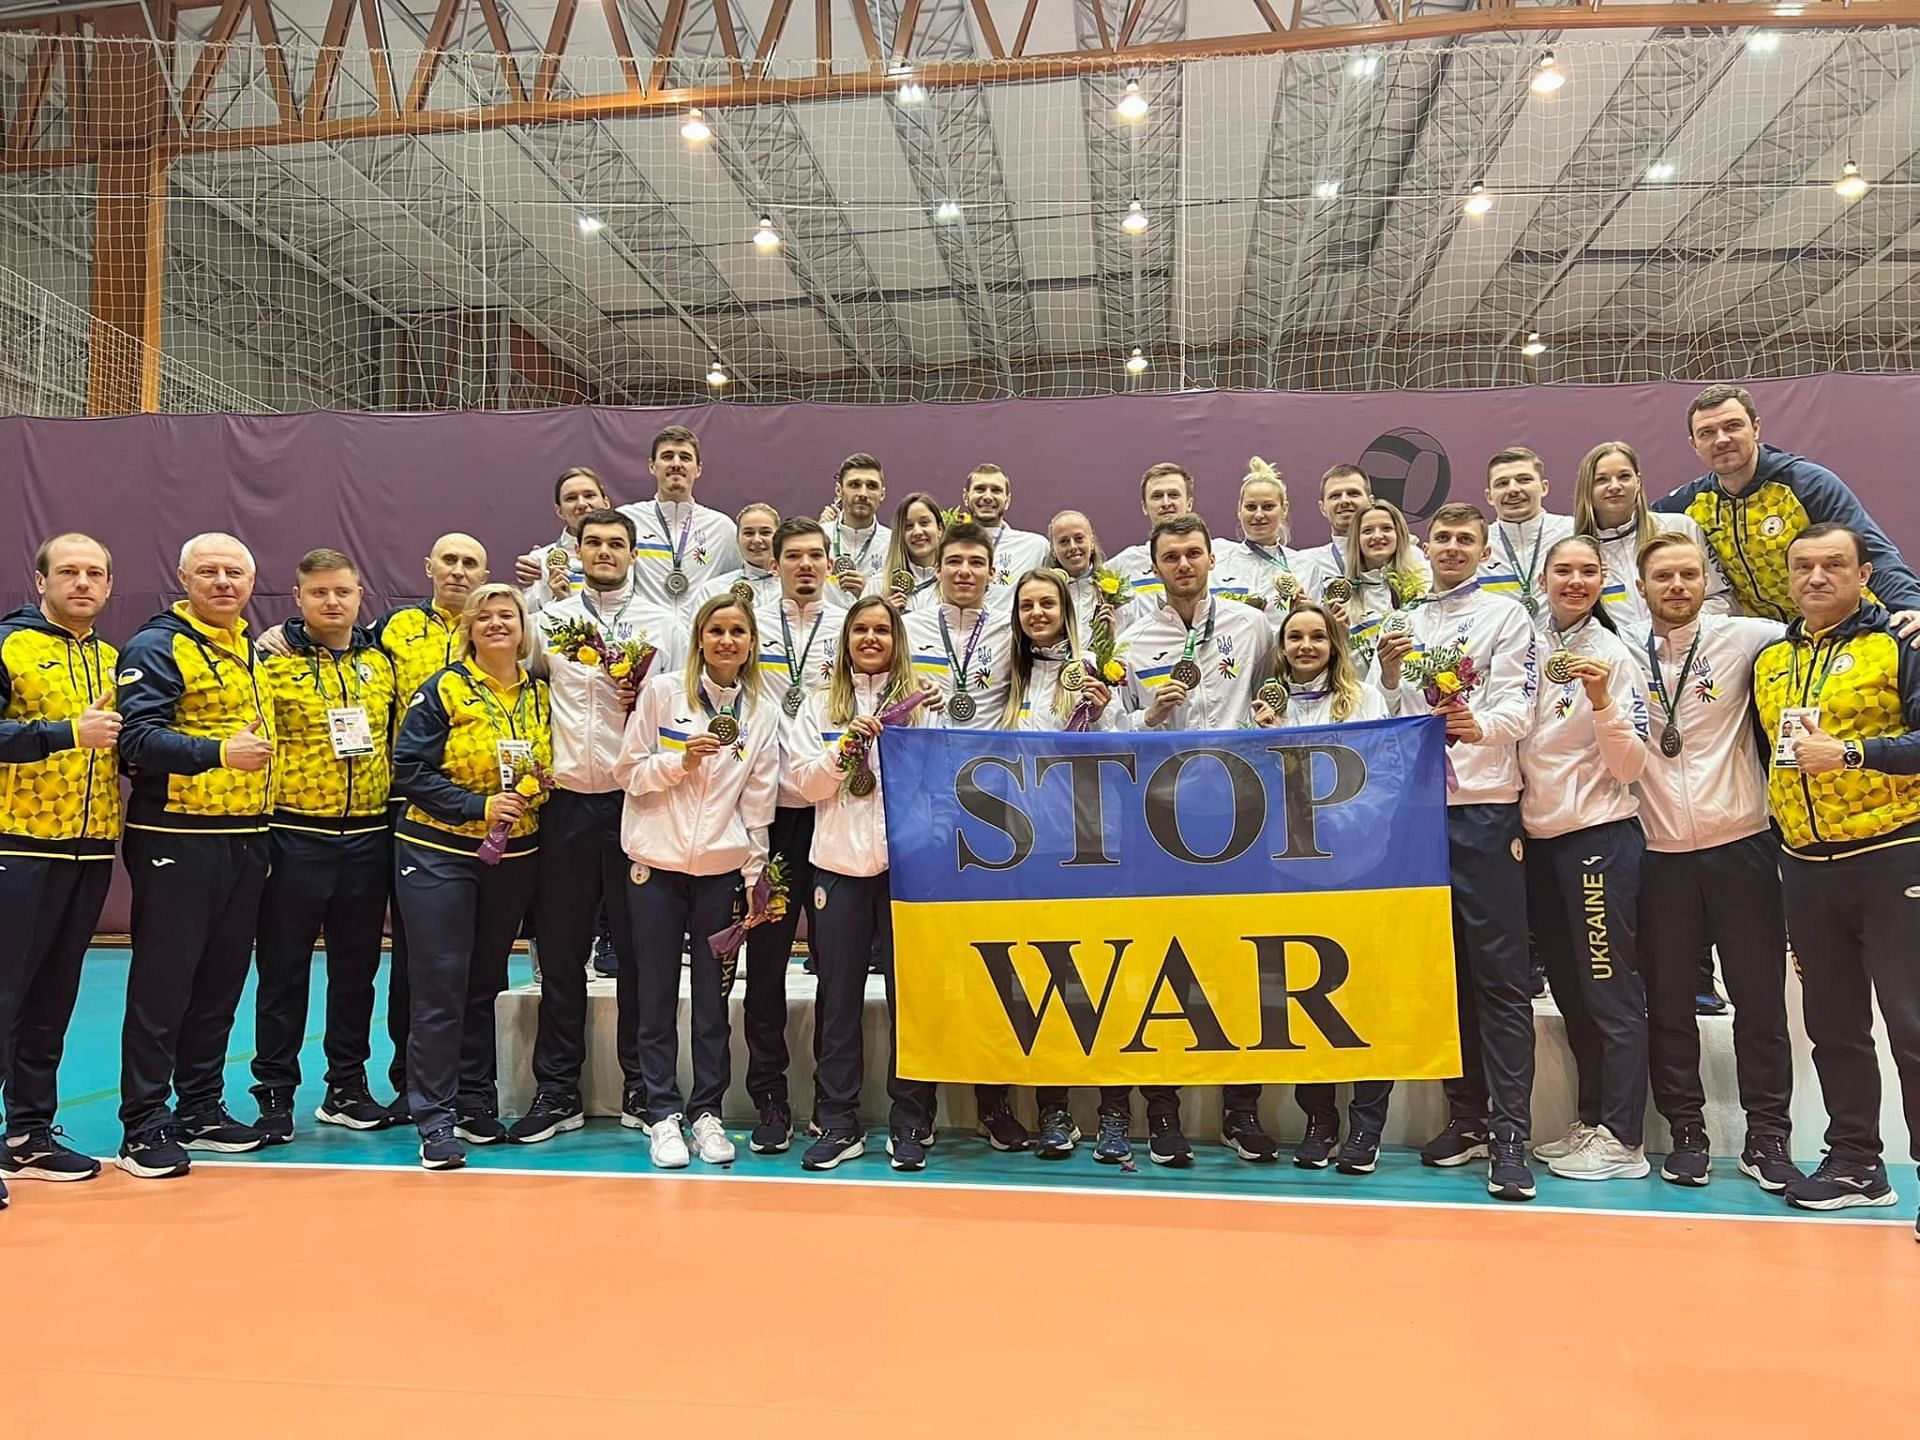 पदक तालिका में टॉप पर रहने वाले यूक्रेन के खिलाड़ियों ने युद्ध समाप्त करने की अपील की।